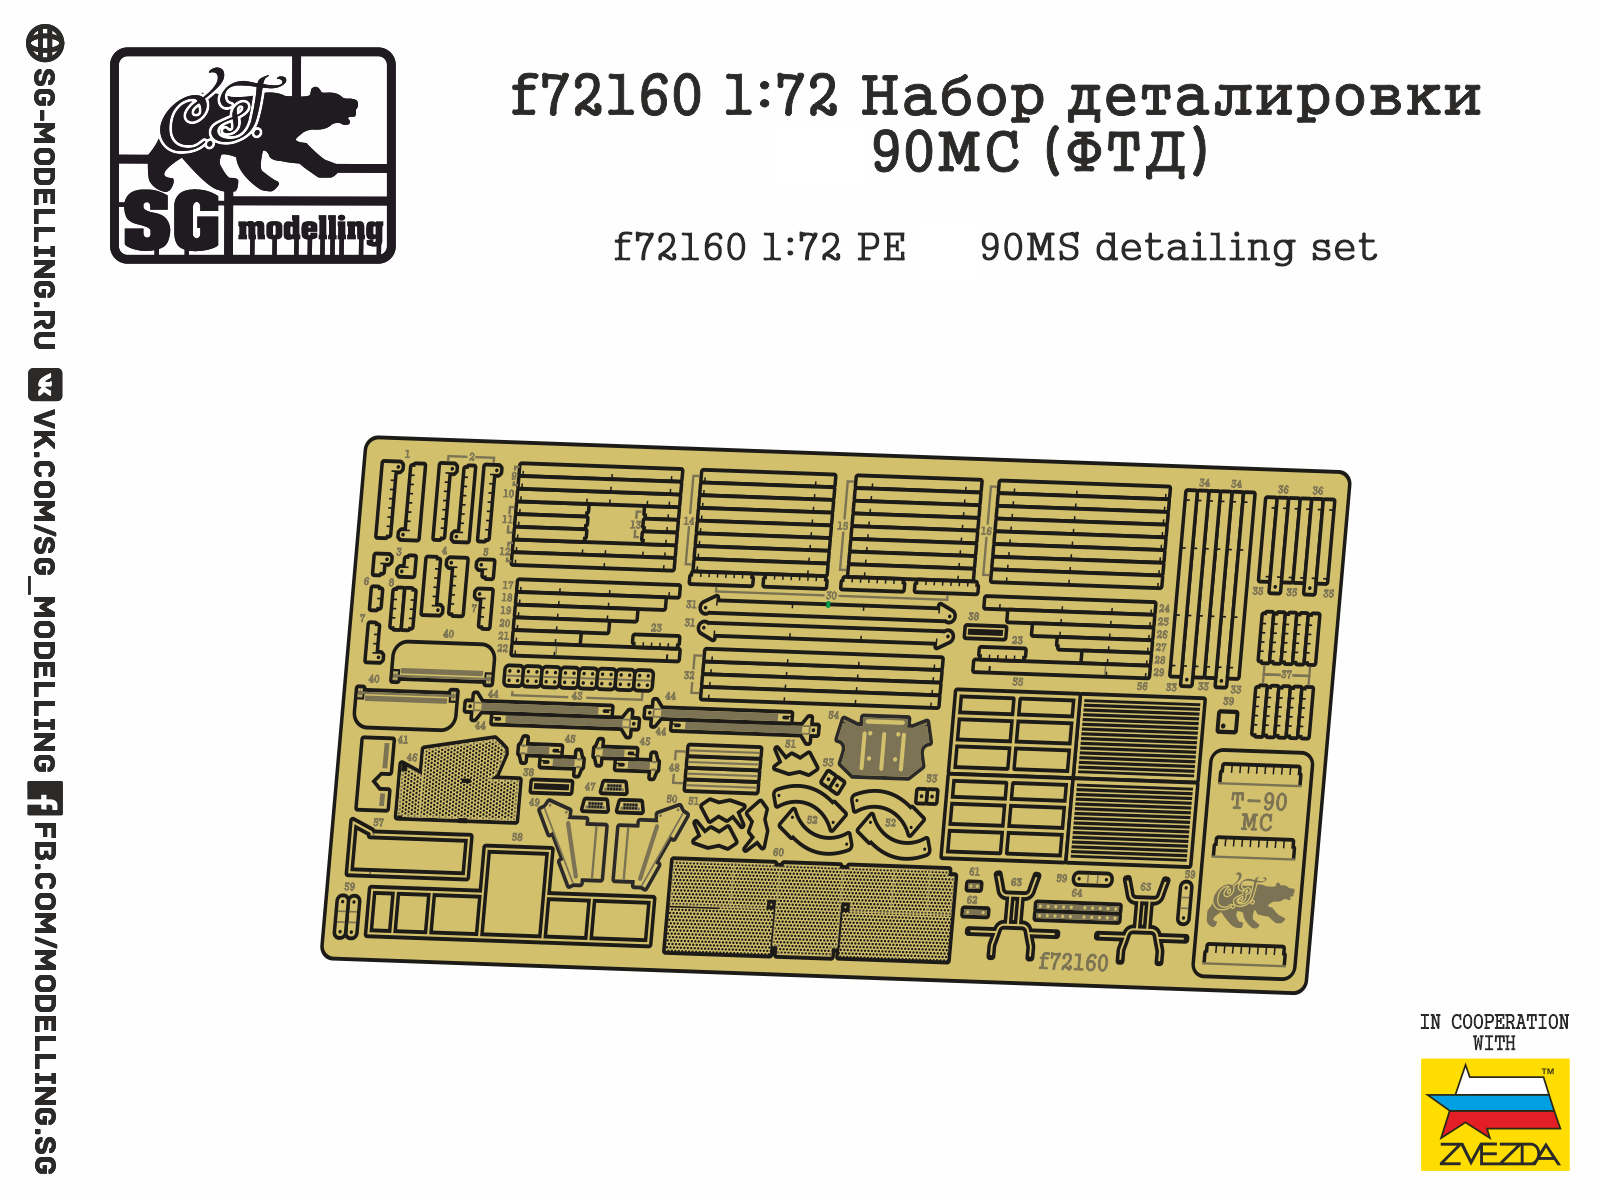 f72160  фототравление  Набор деталировки Танк-90МС  (1:72)